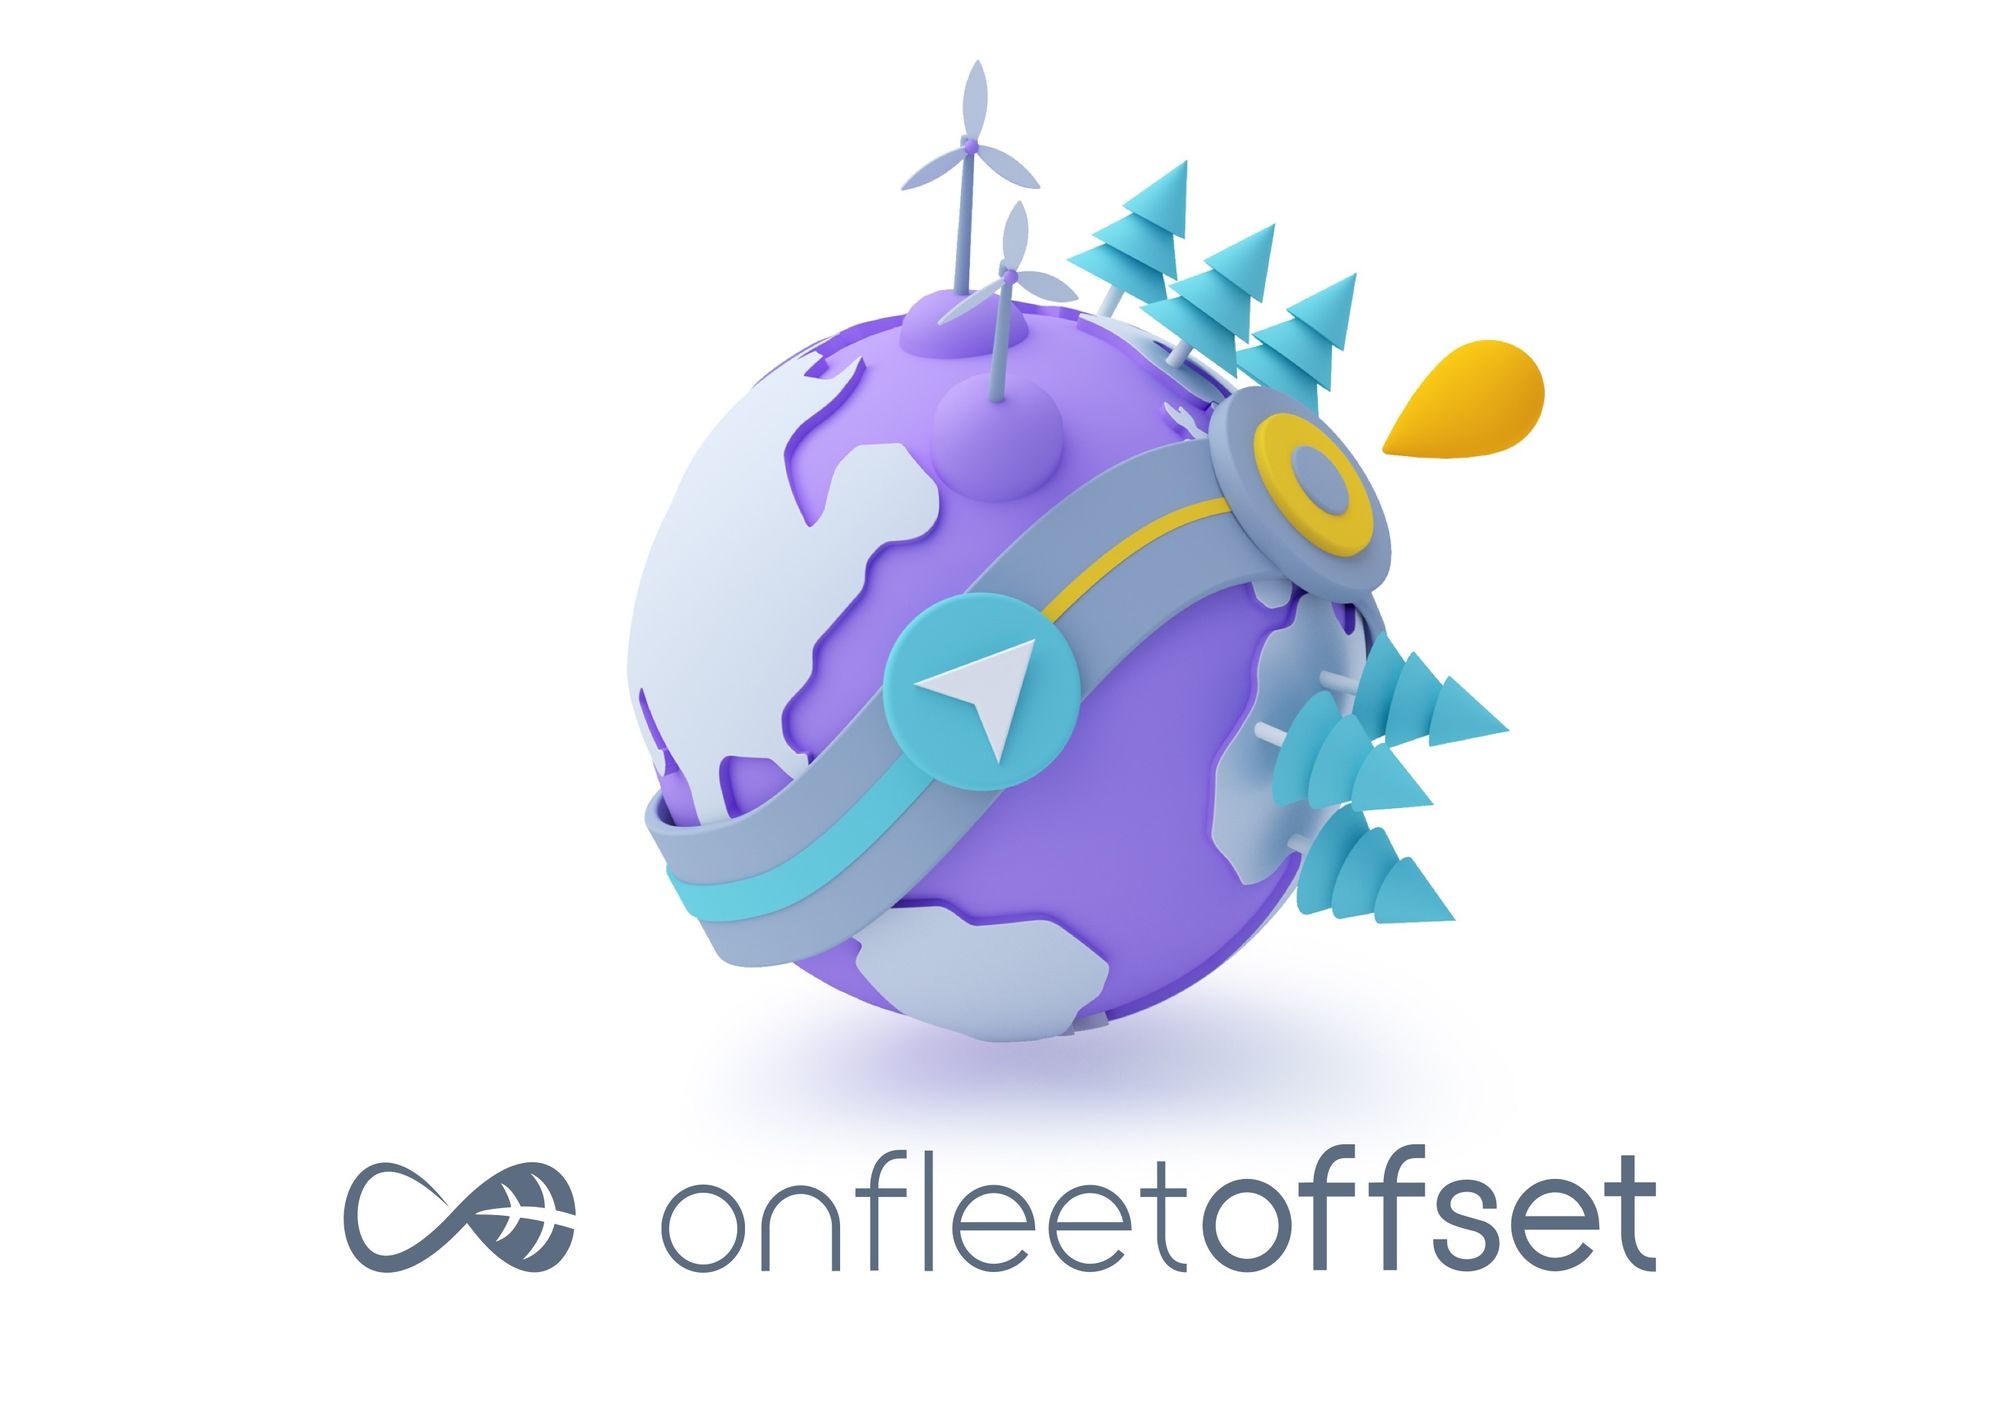 Onfleet Offset logo